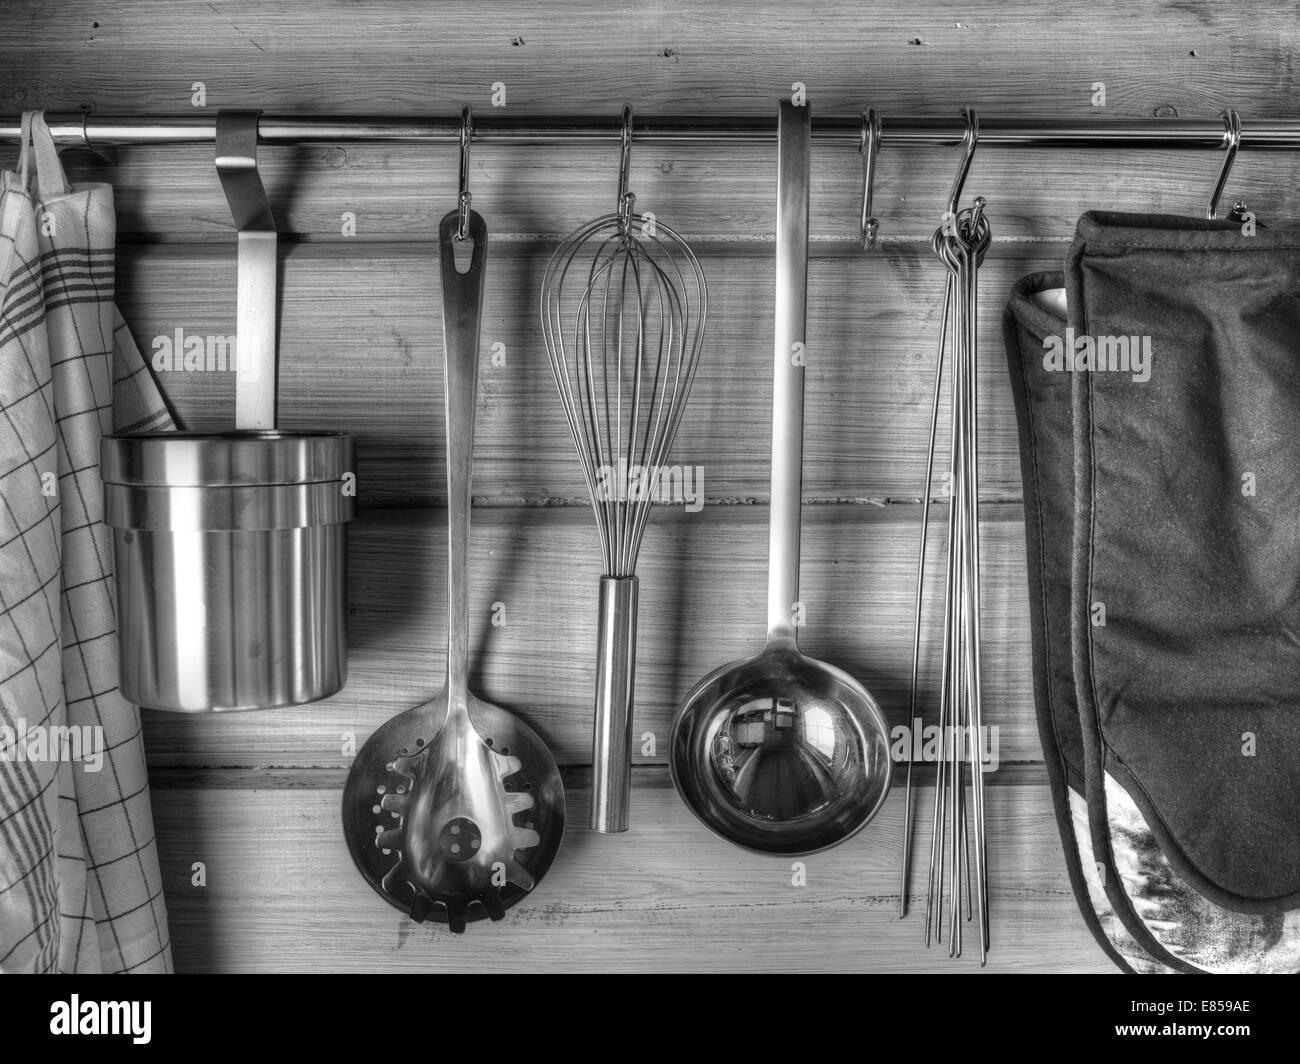 Das Geschirr hängt an der Wand, schwarz / weiß Bild Stockfoto